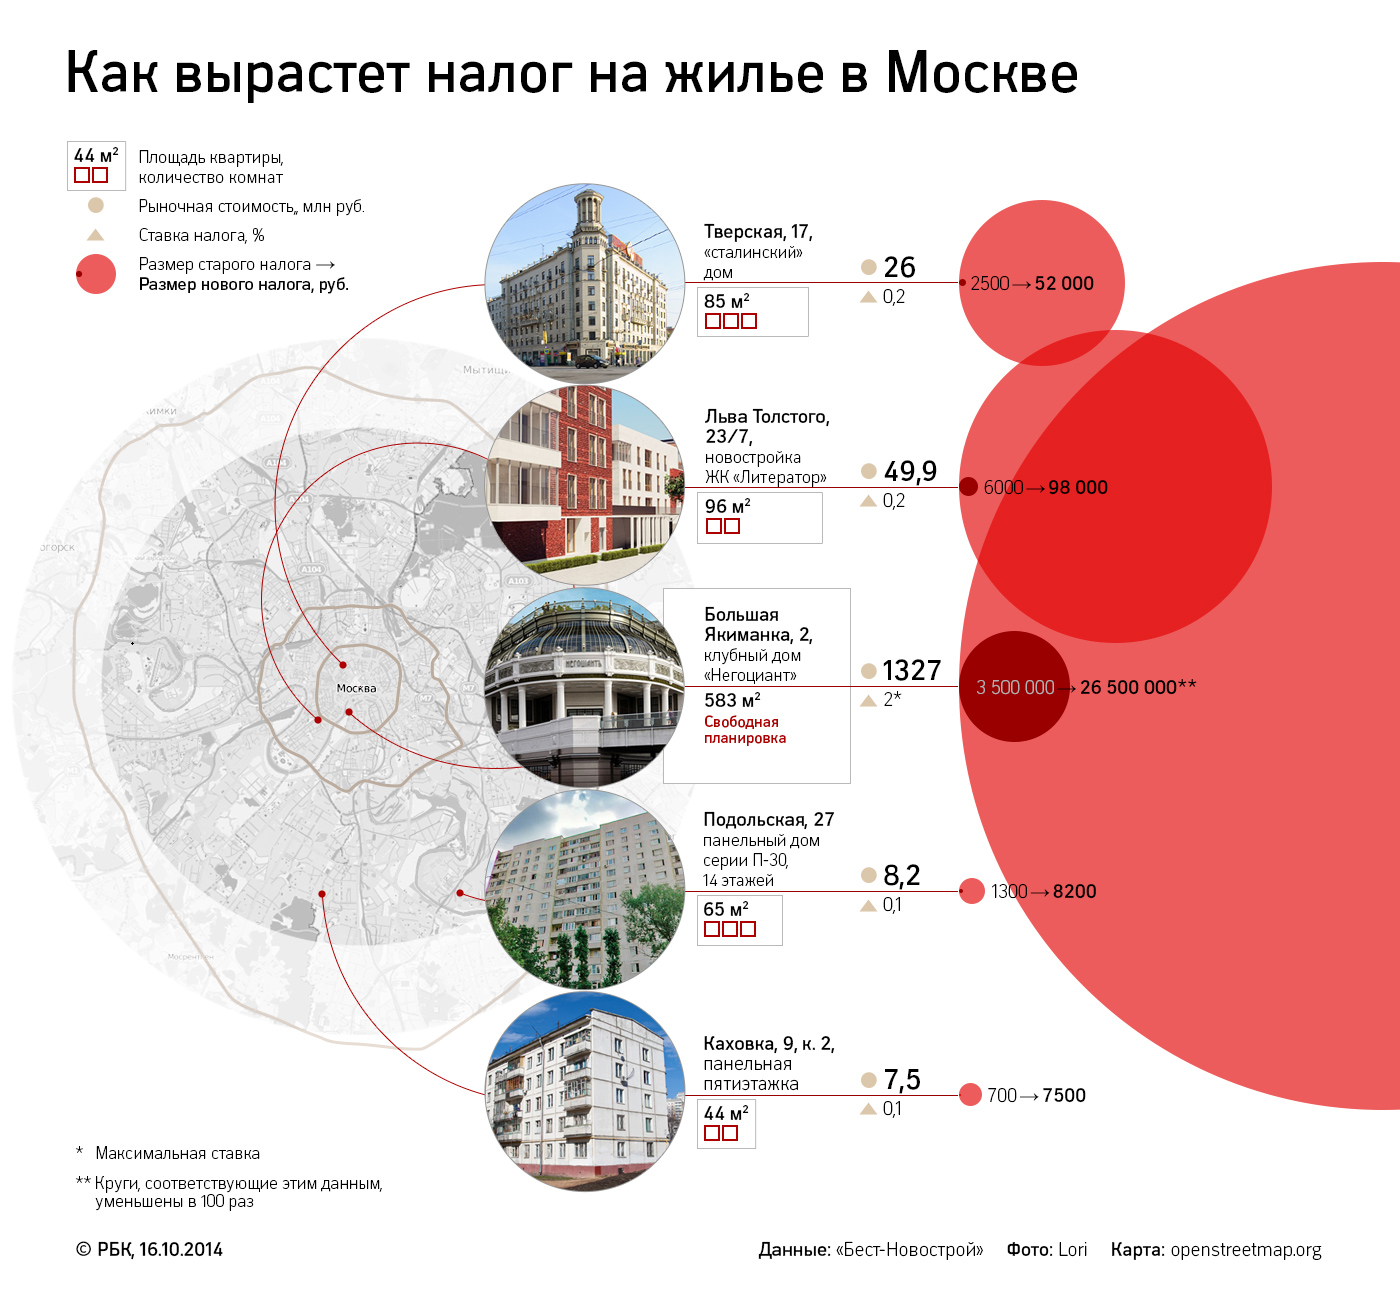 Депутаты одобрили повышение налога на недвижимость в Москве